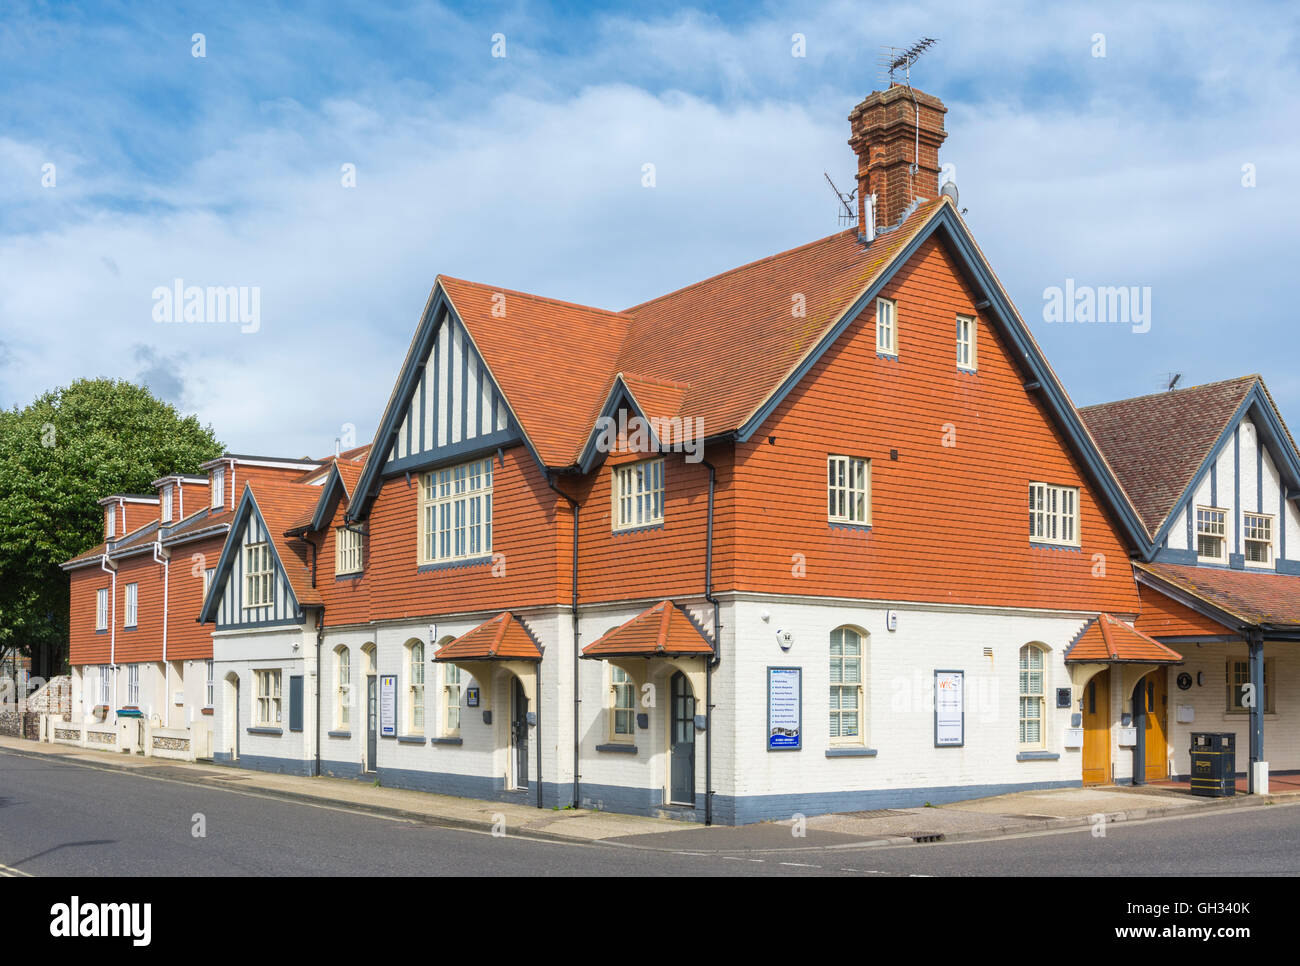 Gratwicke and House, converti en bureaux modernes de Littlehampton, West Sussex, Angleterre, Royaume-Uni. Banque D'Images